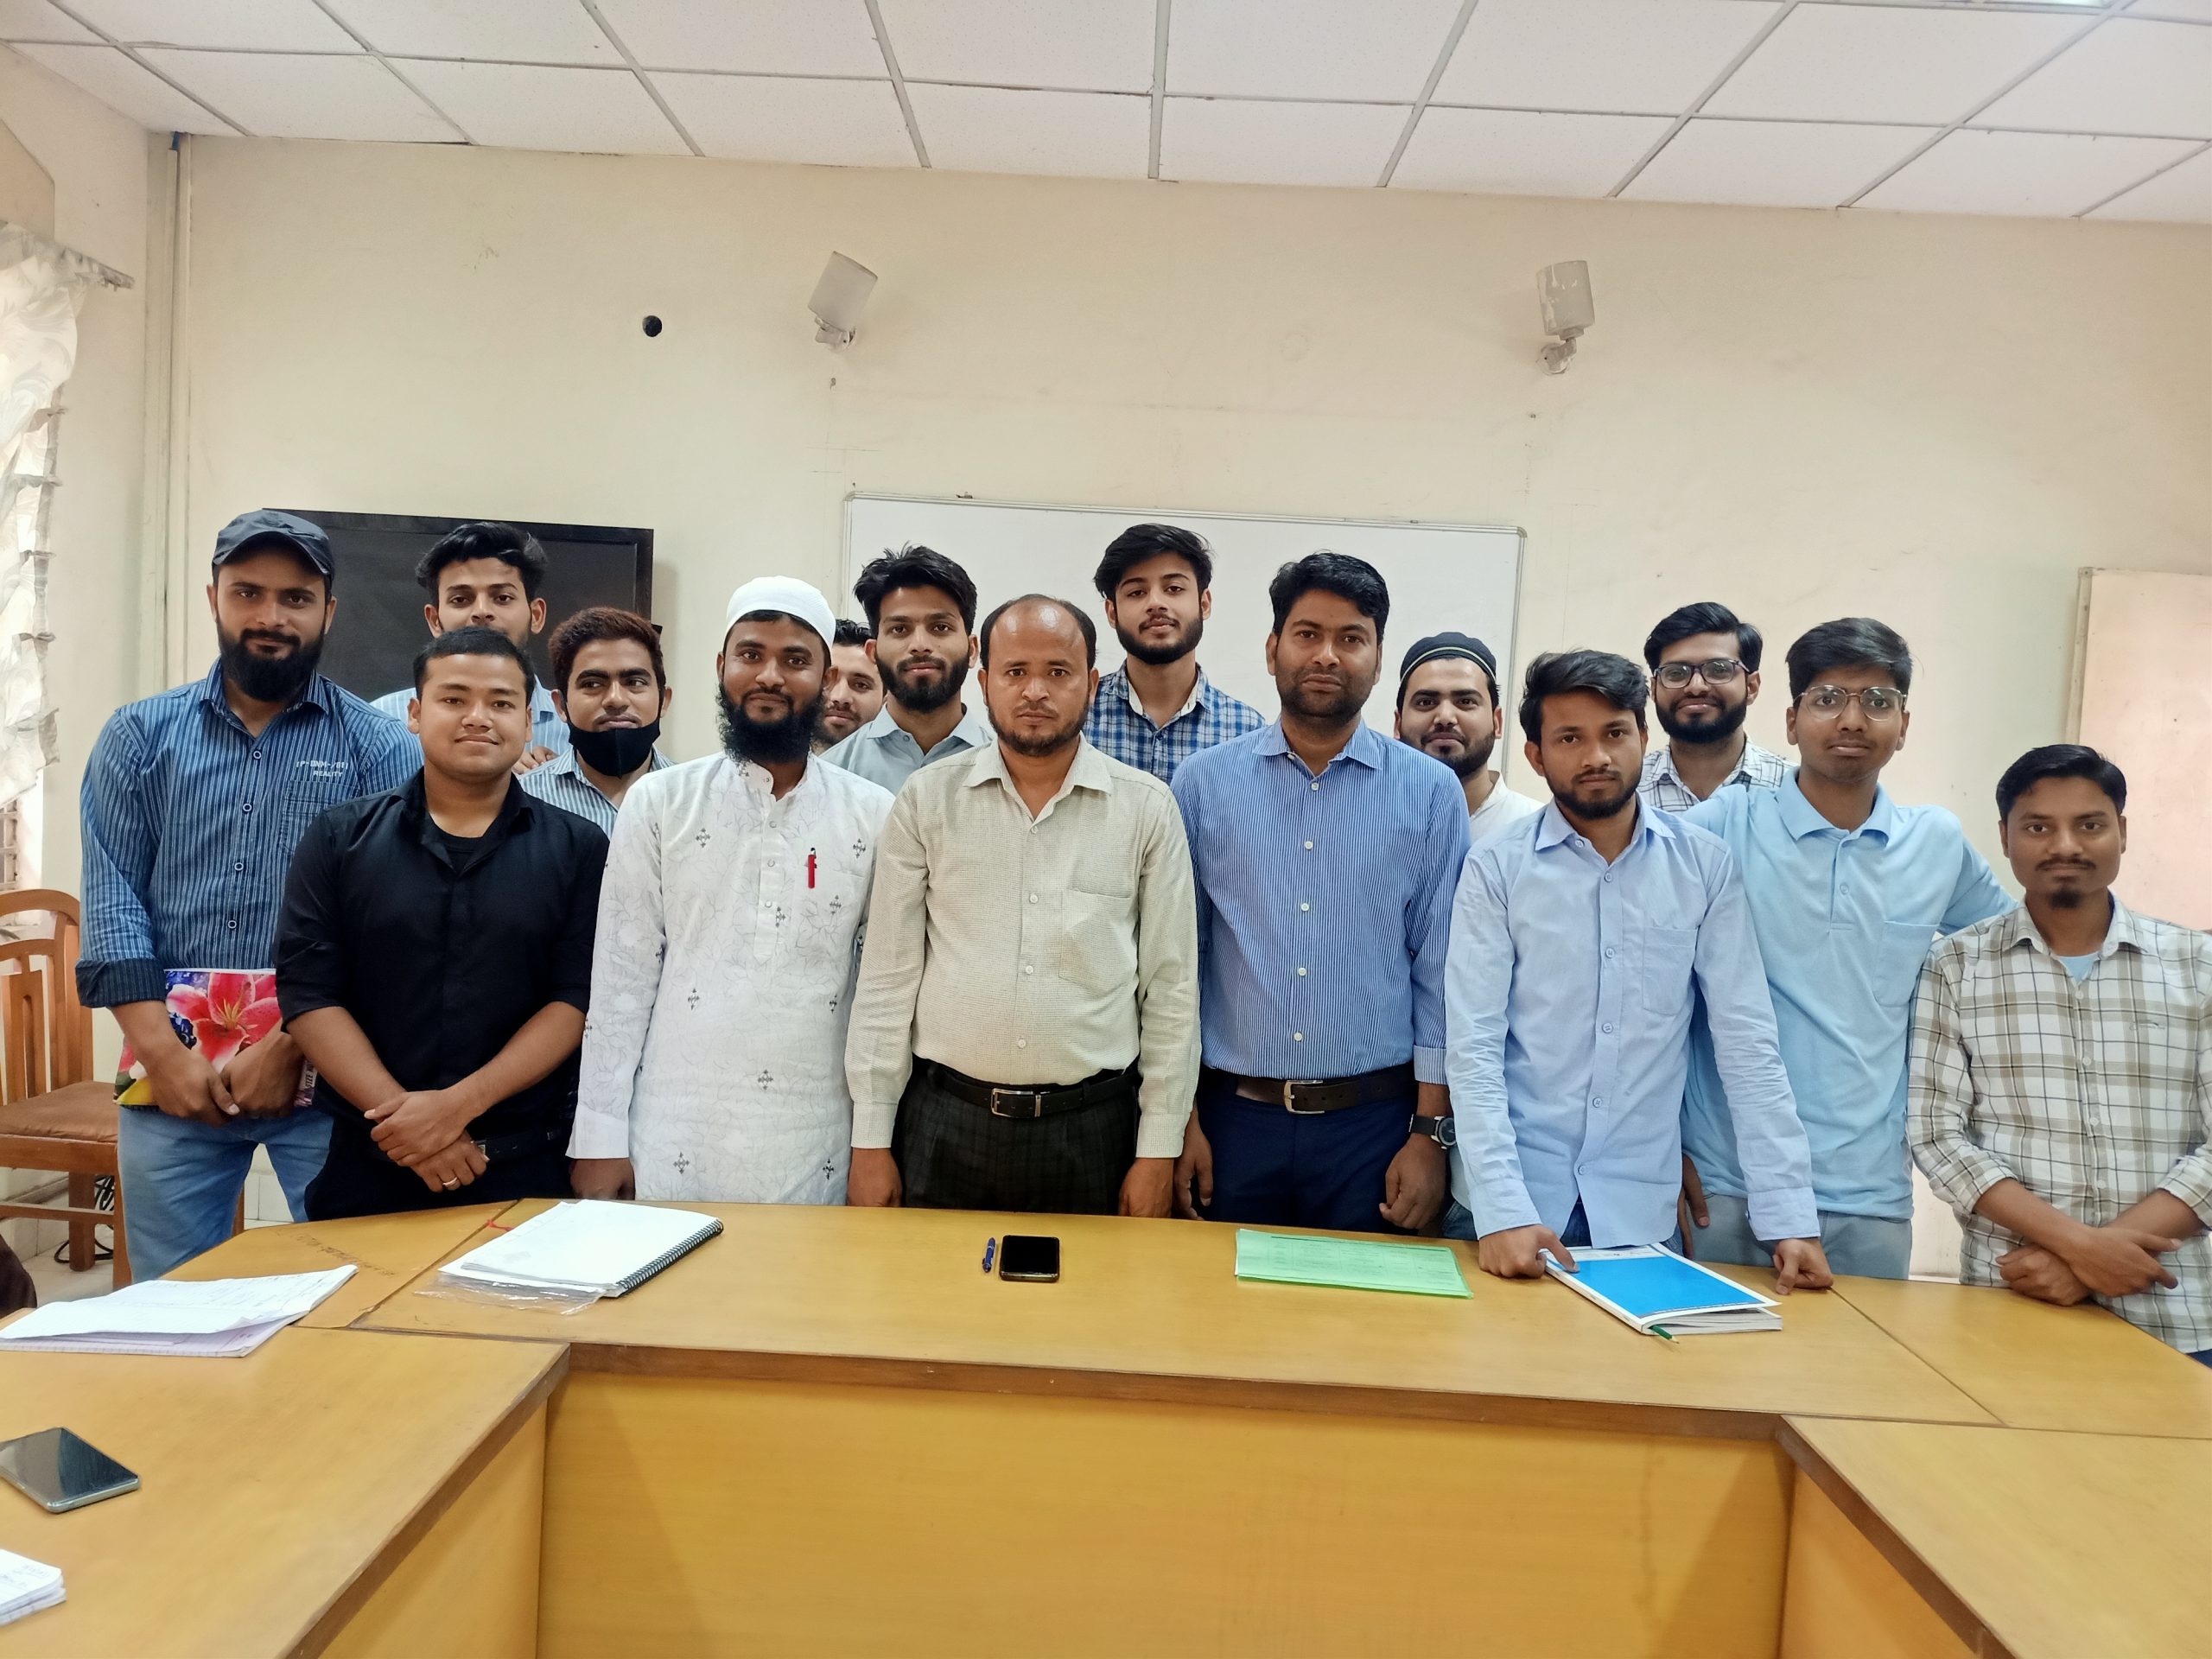 جامعہ ملیہ اسلامیہ کےڈپارٹمنٹ آف ٹیچرٹریننگ اینڈاین ایف ای میں چارروزہ ورکشاپ اختتام پذیر